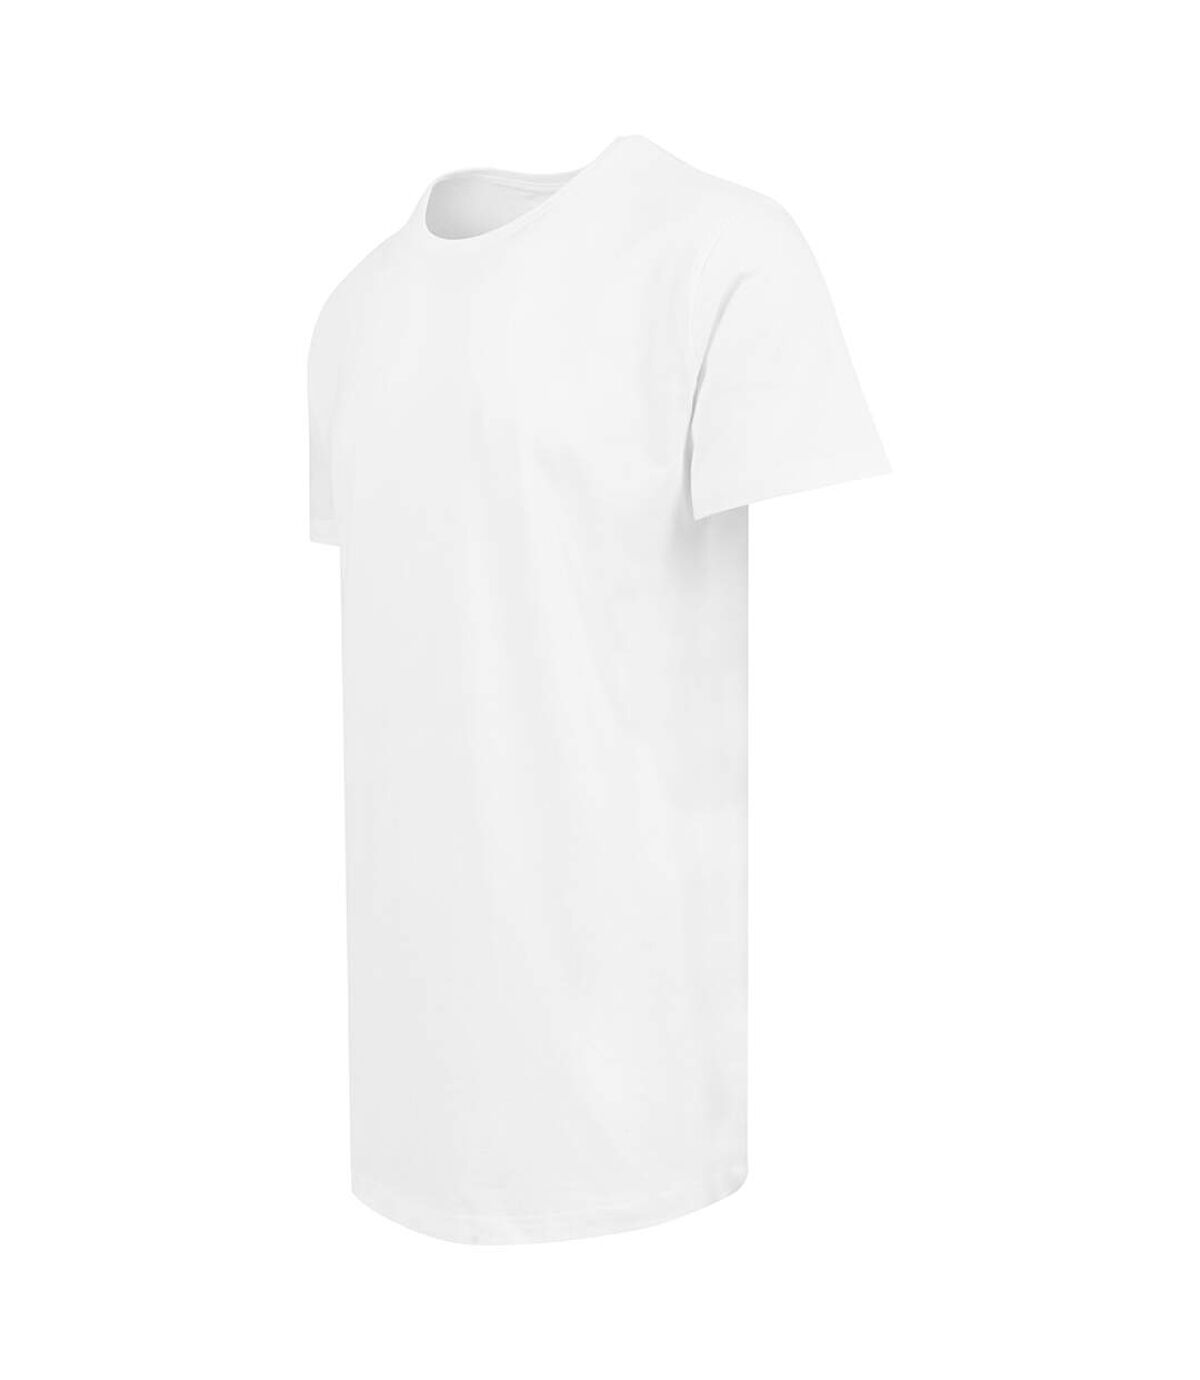 Build Your Brand - T-shirt long à manches courtes - Homme (Blanc) - UTRW5671